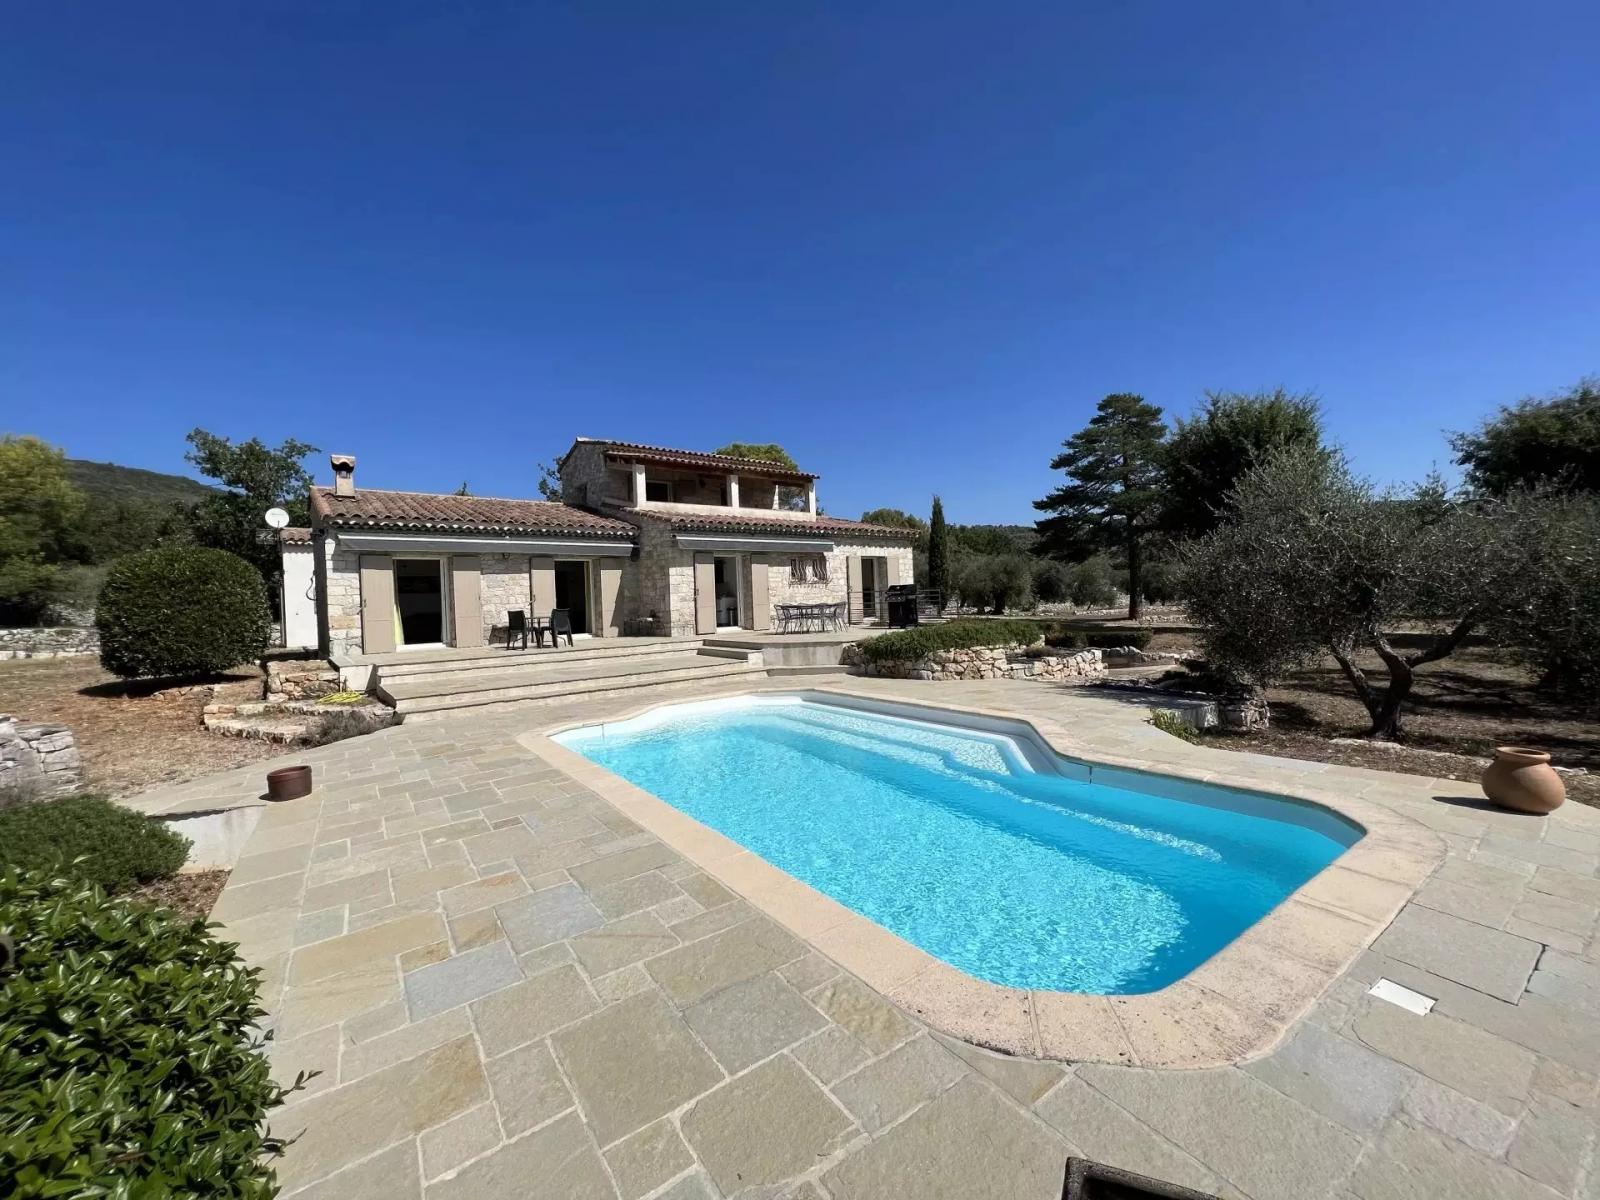 Prodej vily v Saint-Cézaire-sur-Siagne, 4+1, 160 m2, terasa, bazén